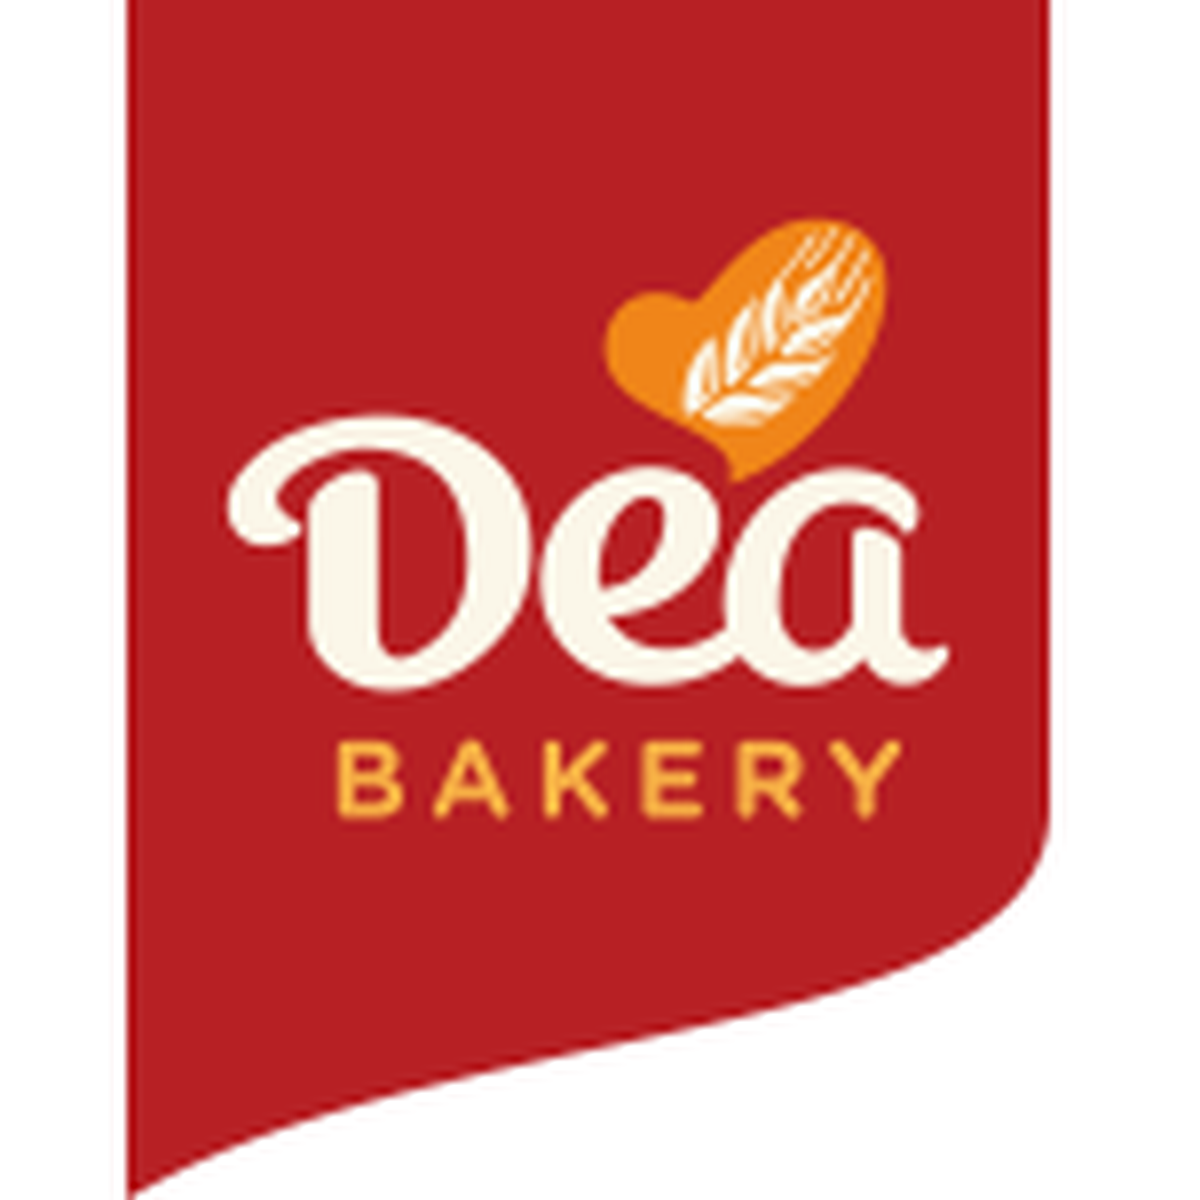 dea